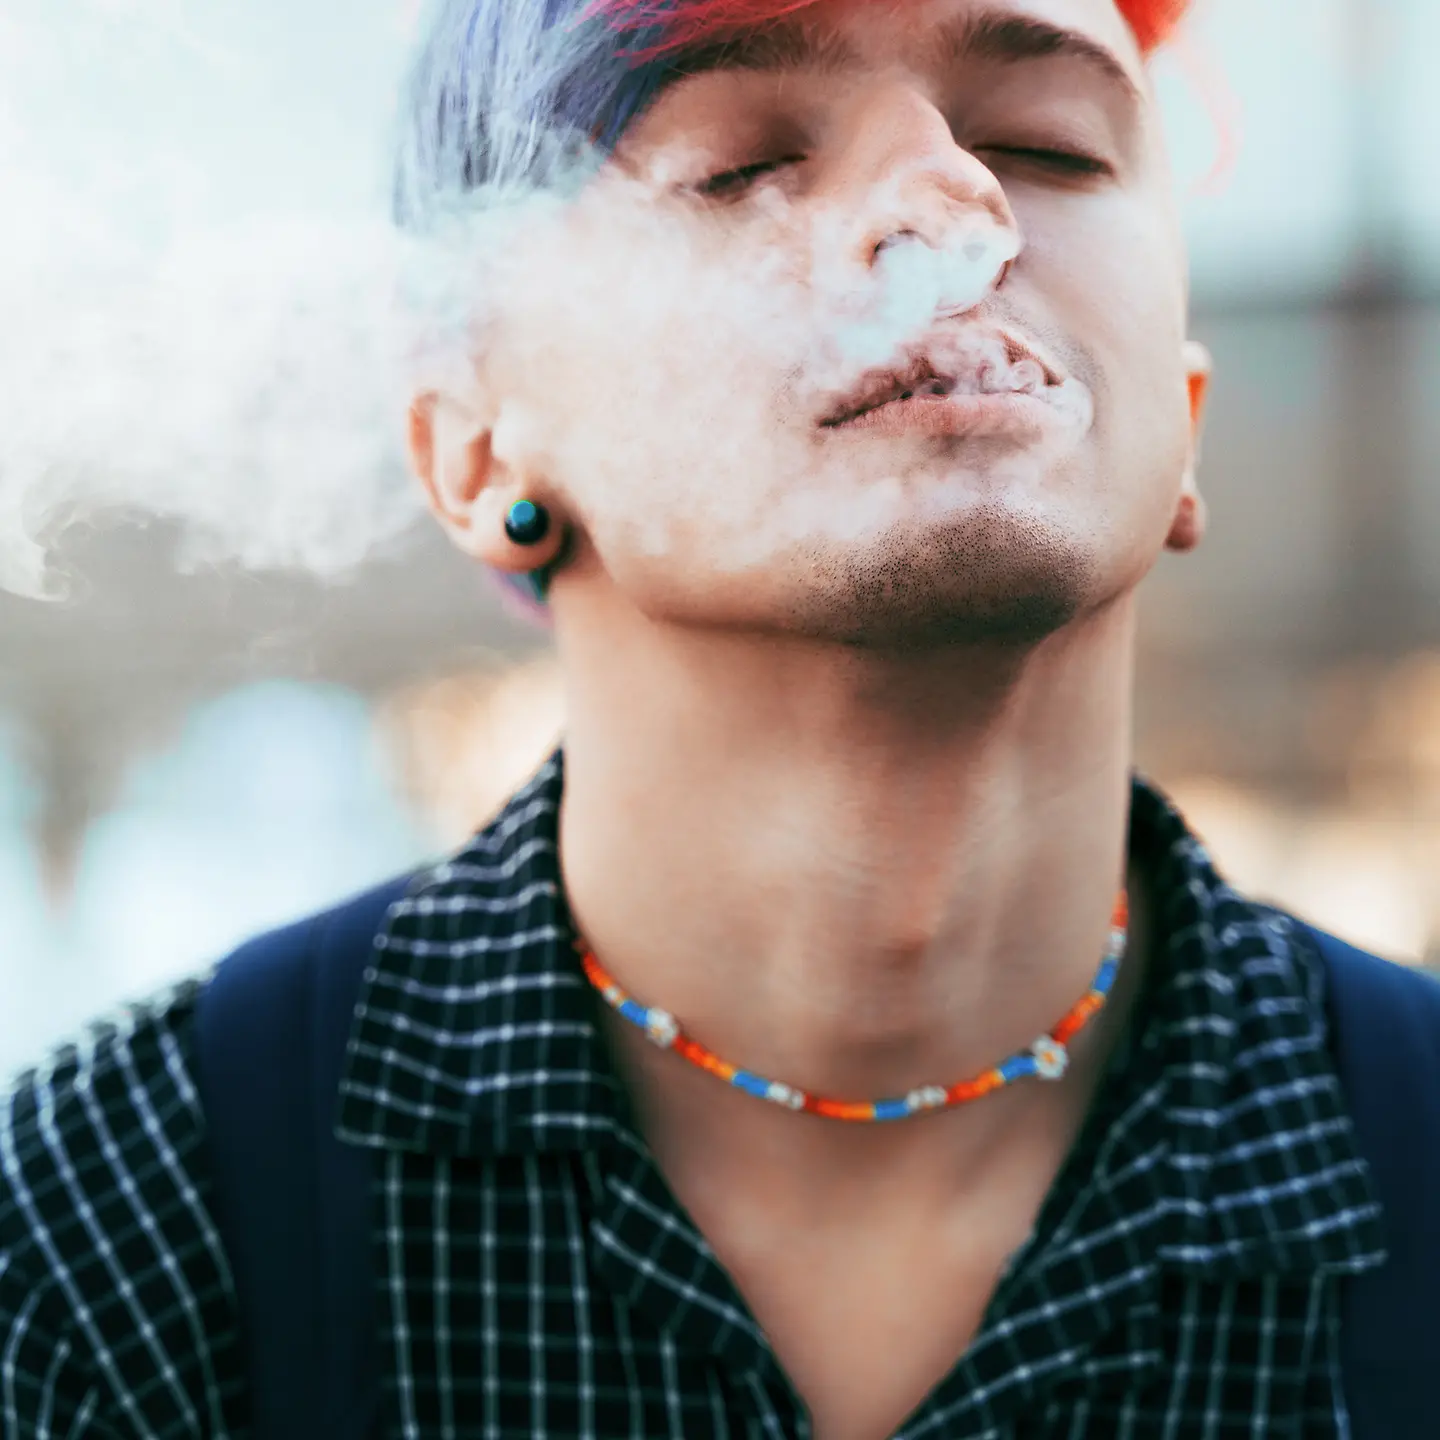 Ein junger Mann vaporisiert Cannabis